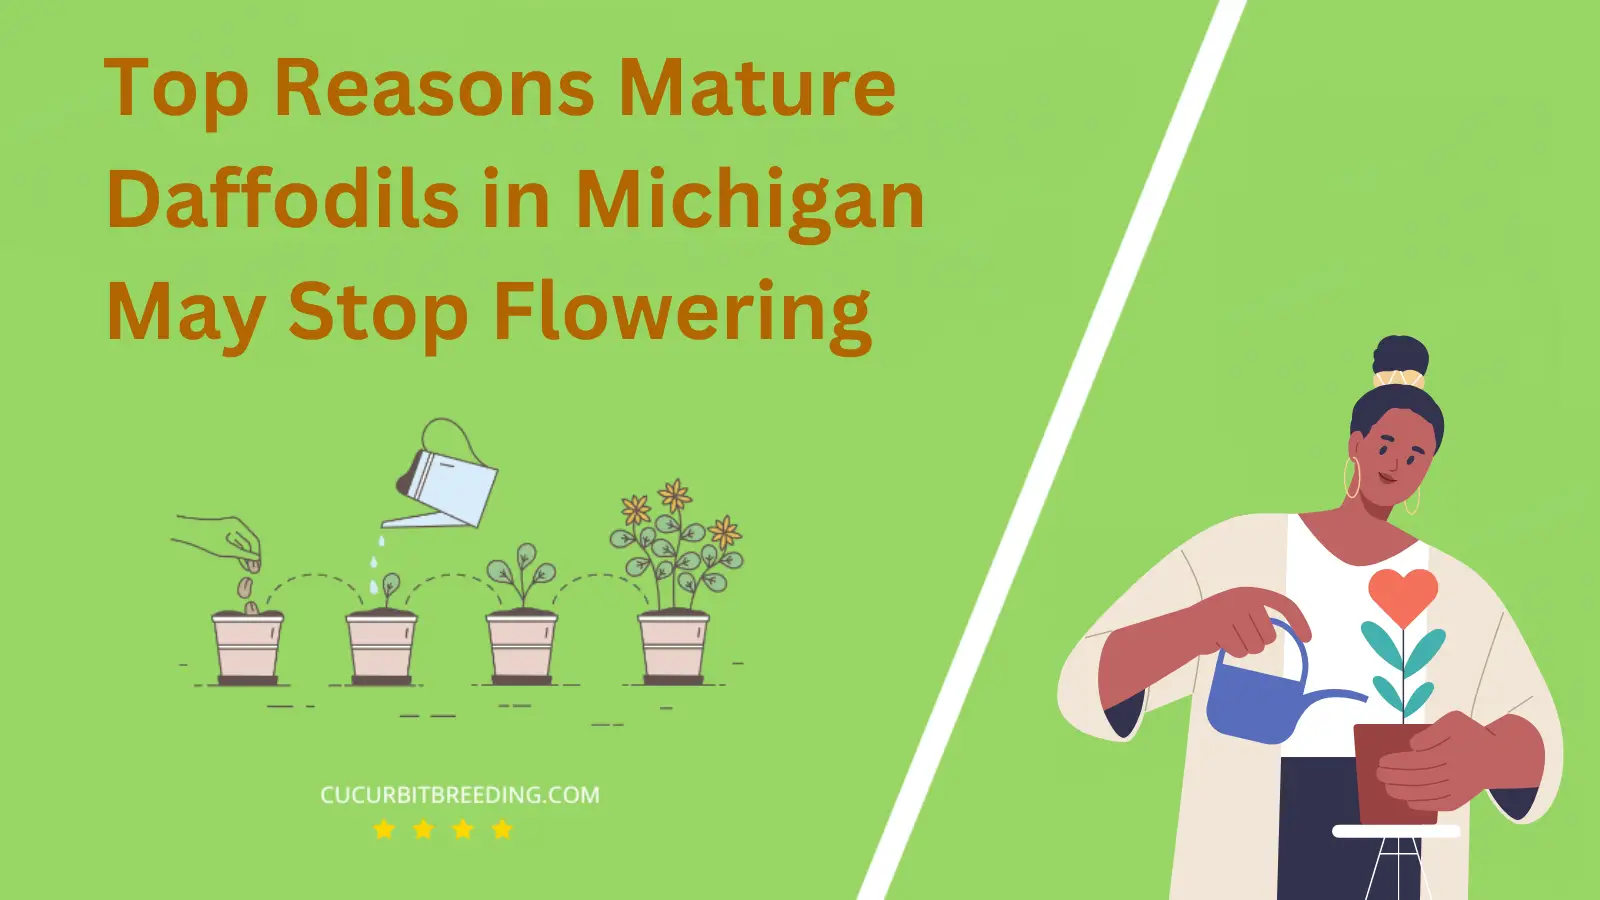 Top Reasons Mature Daffodils in Michigan May Stop Flowering